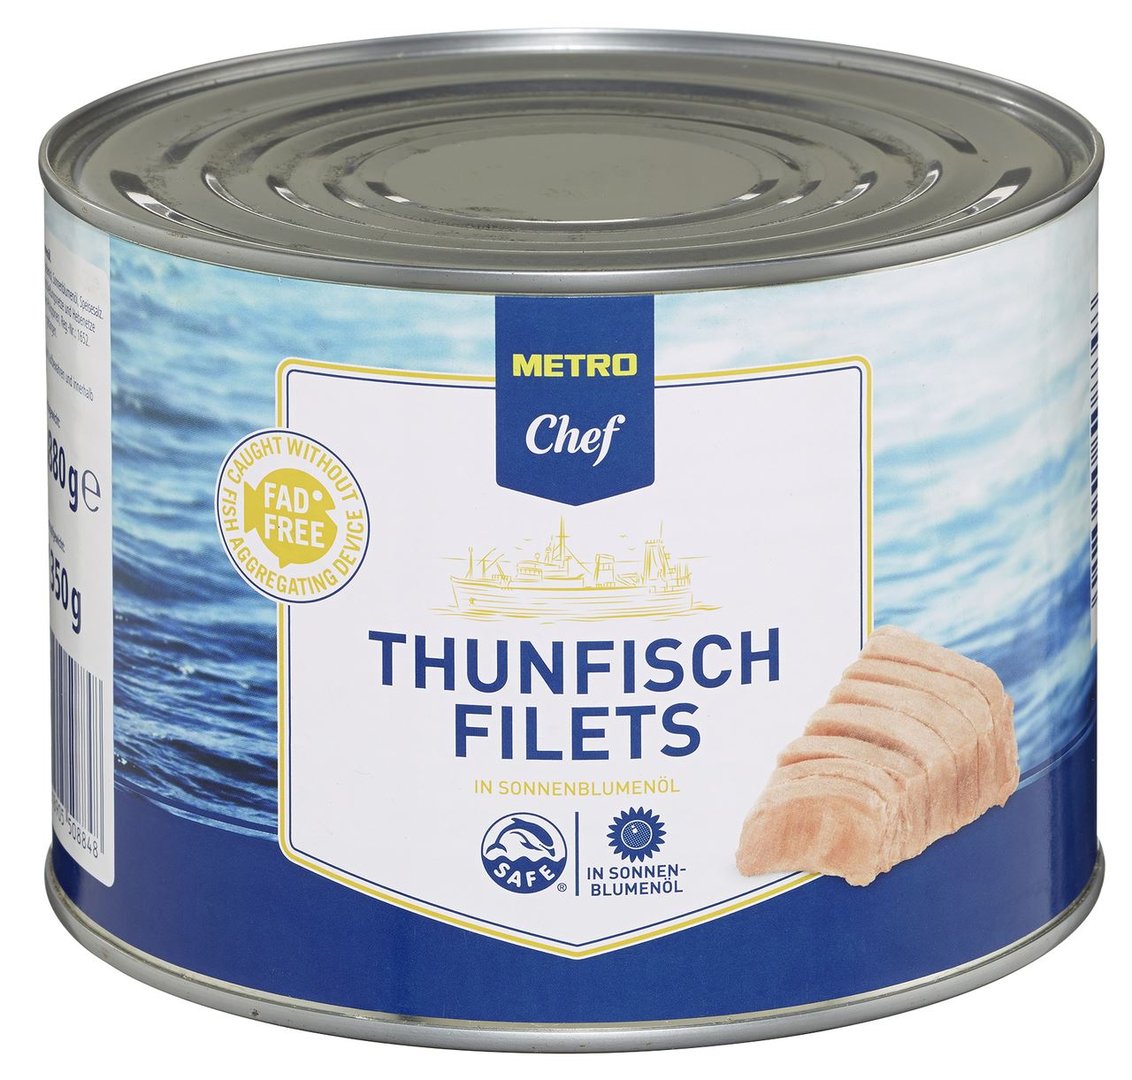 METRO Chef - Thunfischfilets in Sonnenblumenöl - 1,88 kg Dose